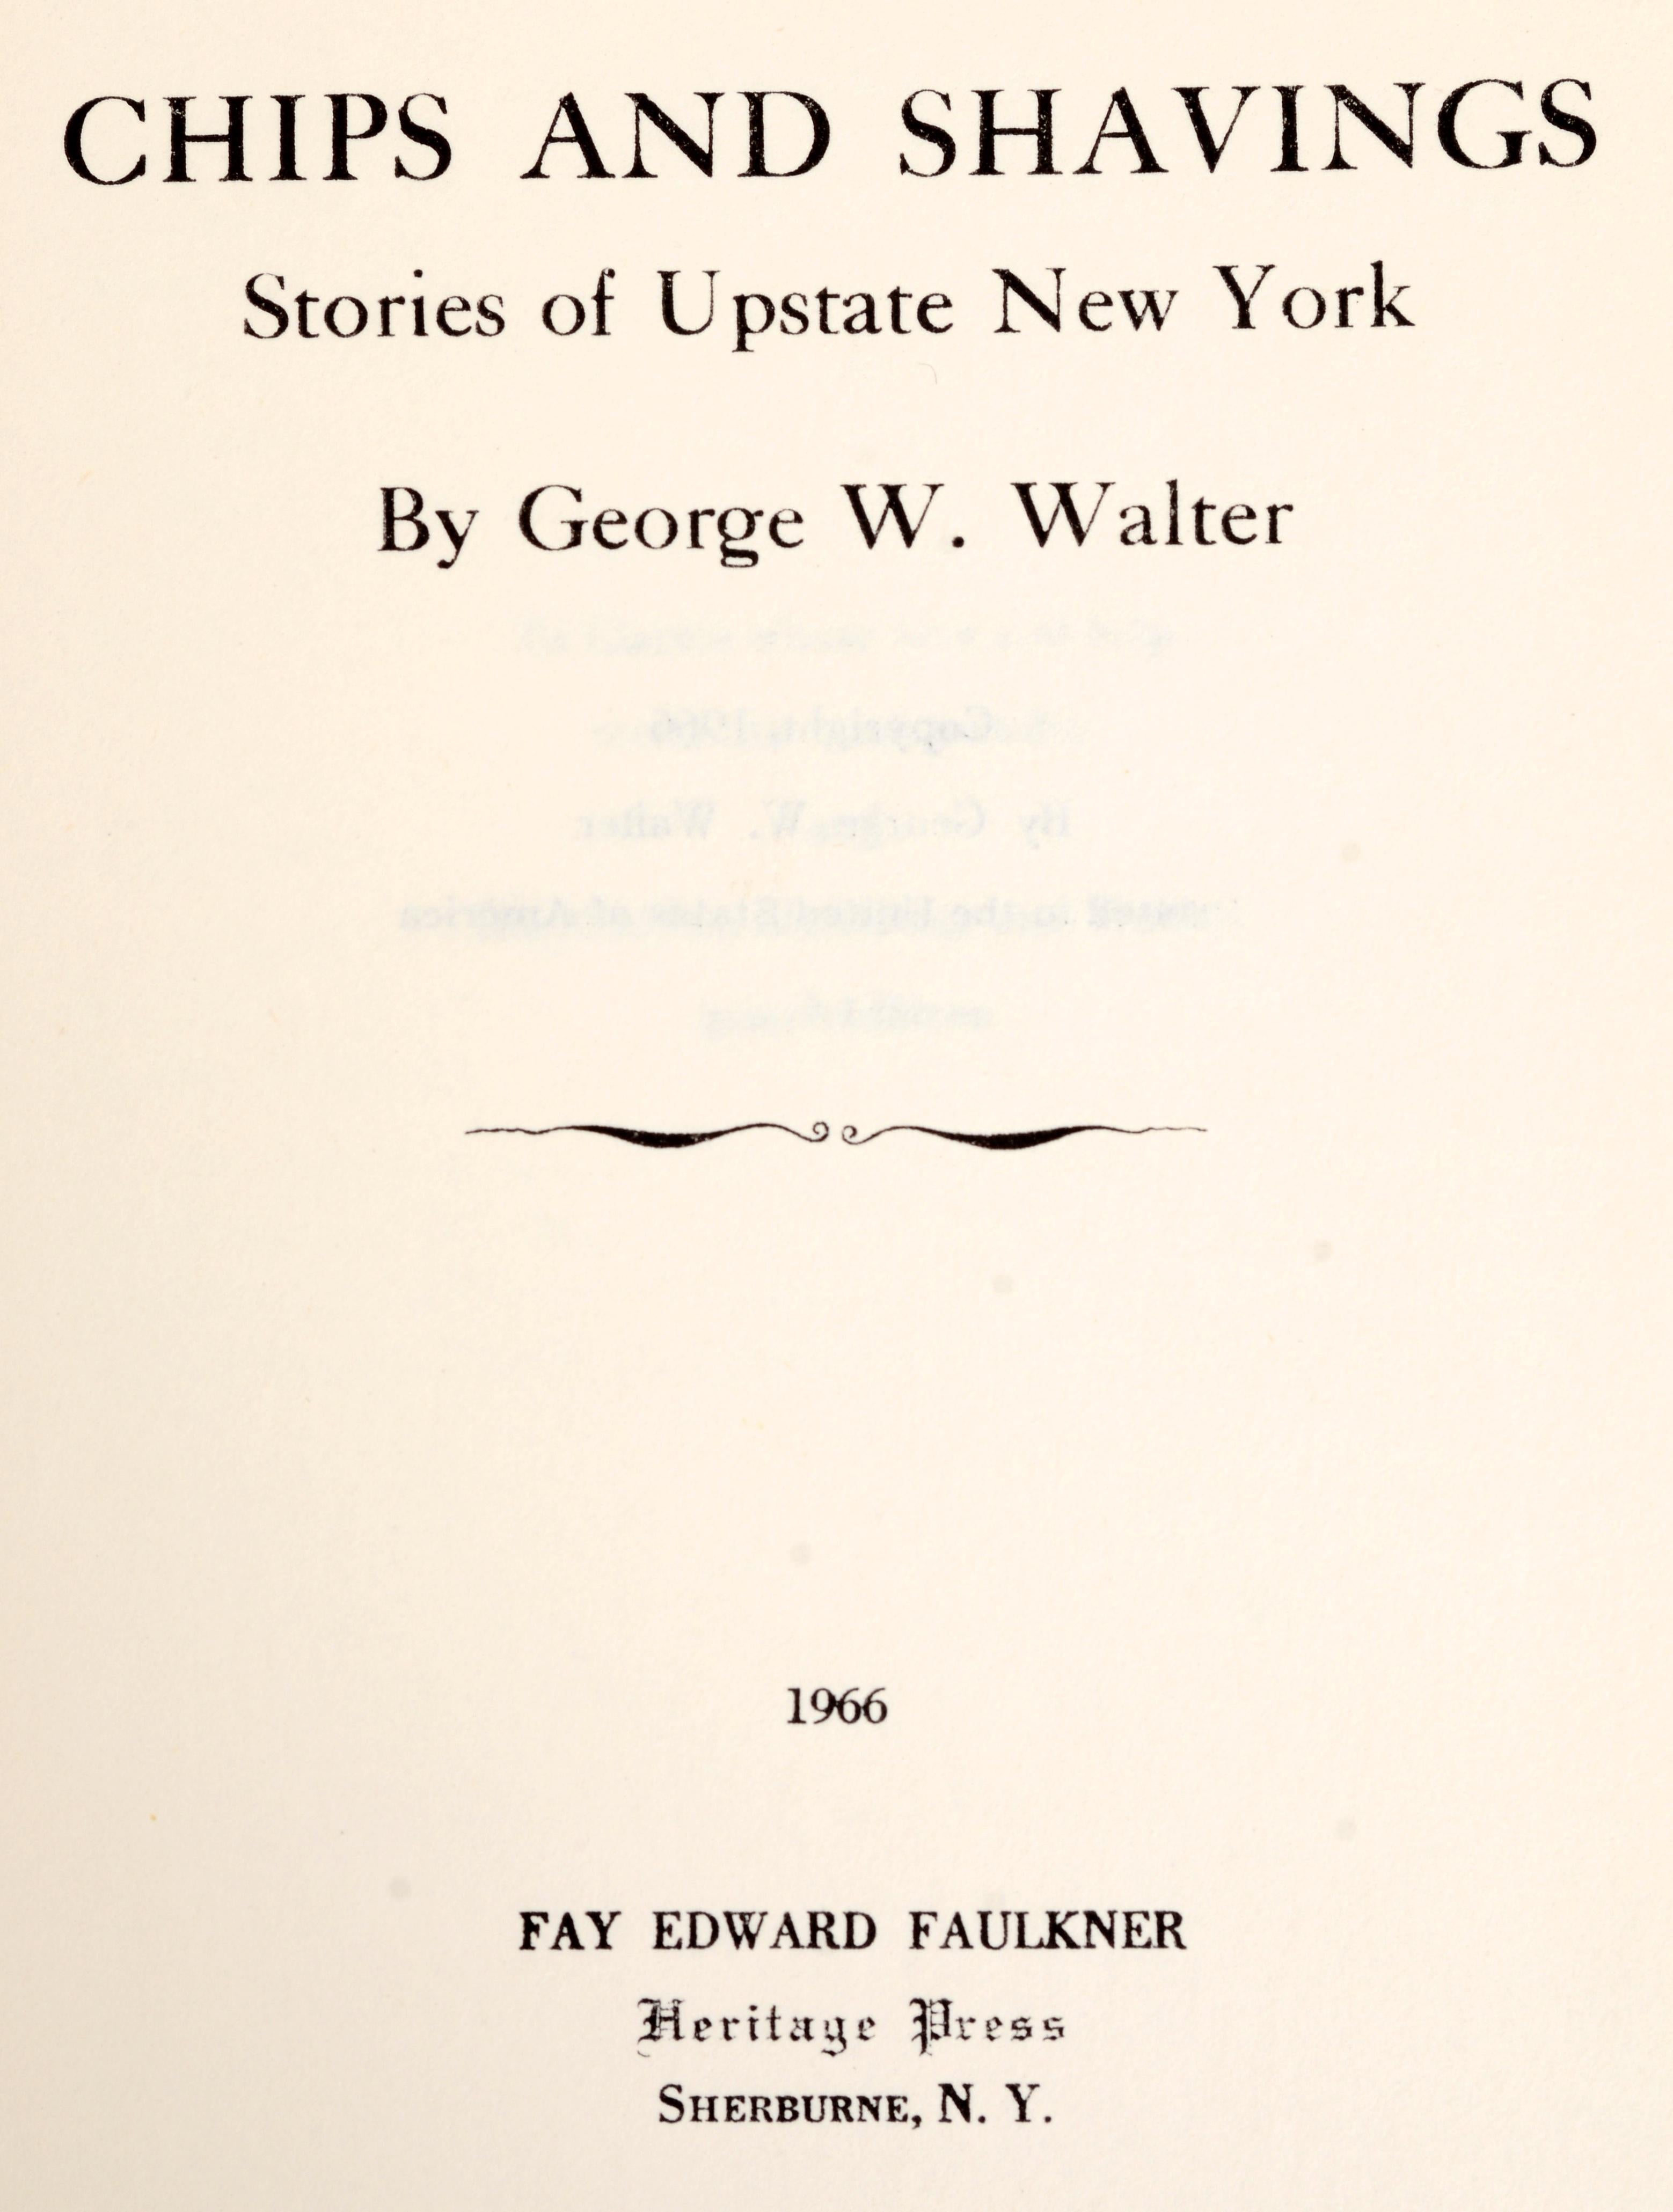 Chips and Shavings : Histoires du nord de l'État de New York par George Walter. Heritage Press, 1966. 1ère édition, couverture rigide avec jaquette. Plein d'histoires intéressantes sur les premiers jours du nord de l'État de New York. L'une d'elles